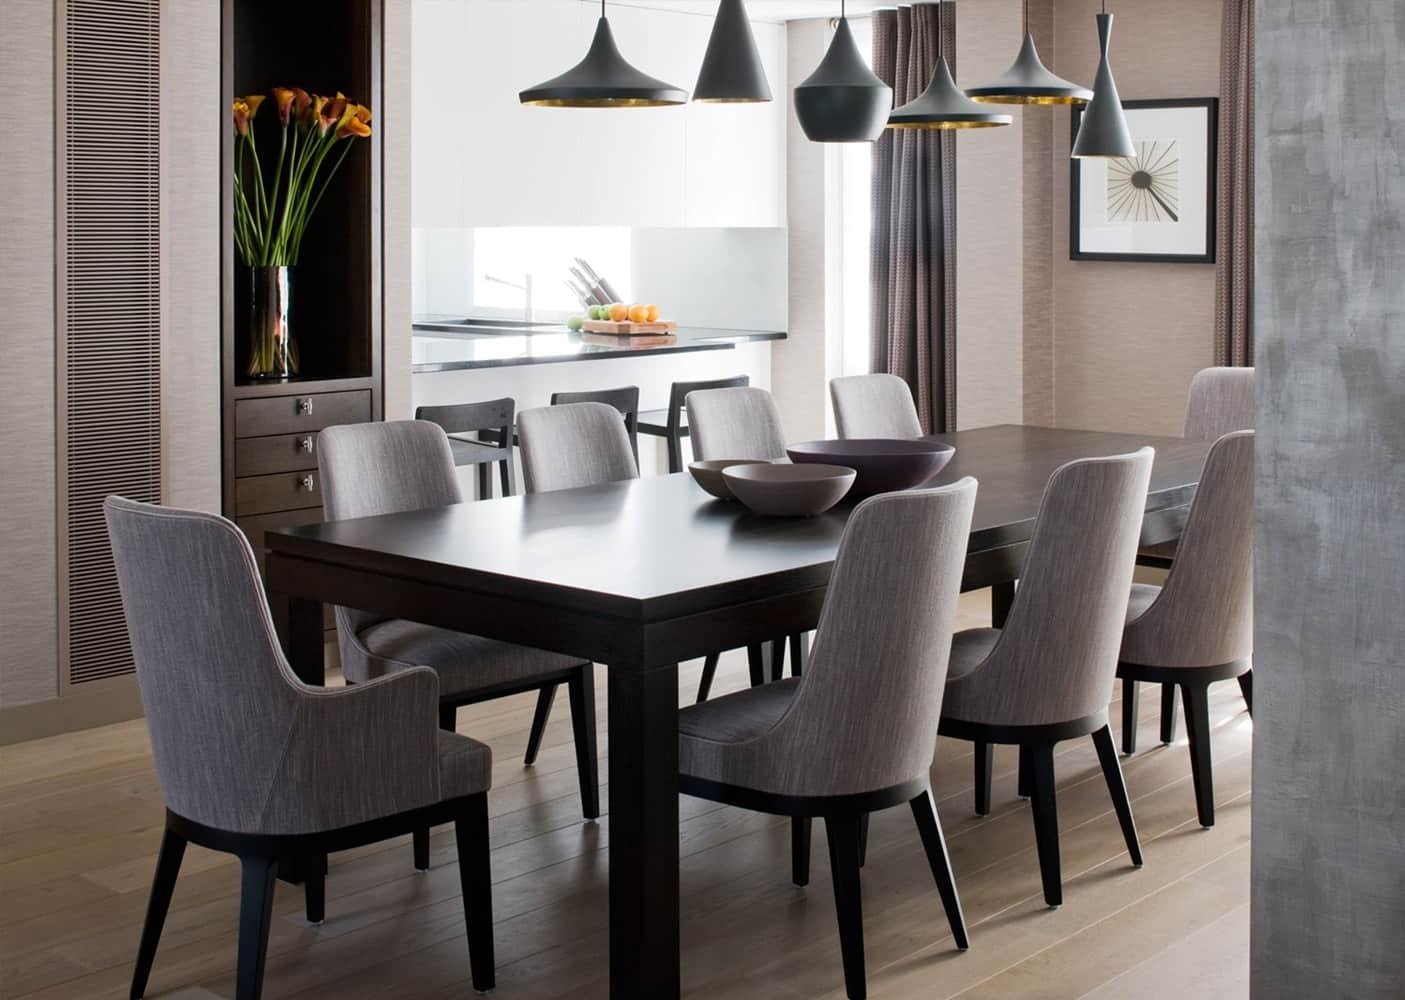 Фото стулья гостиной. Стулья Lisette Grey Dining. Кухонный стол в интерьере. Стулья для кухни в стиле Контемпорари. Интерьер обеденной зоны.